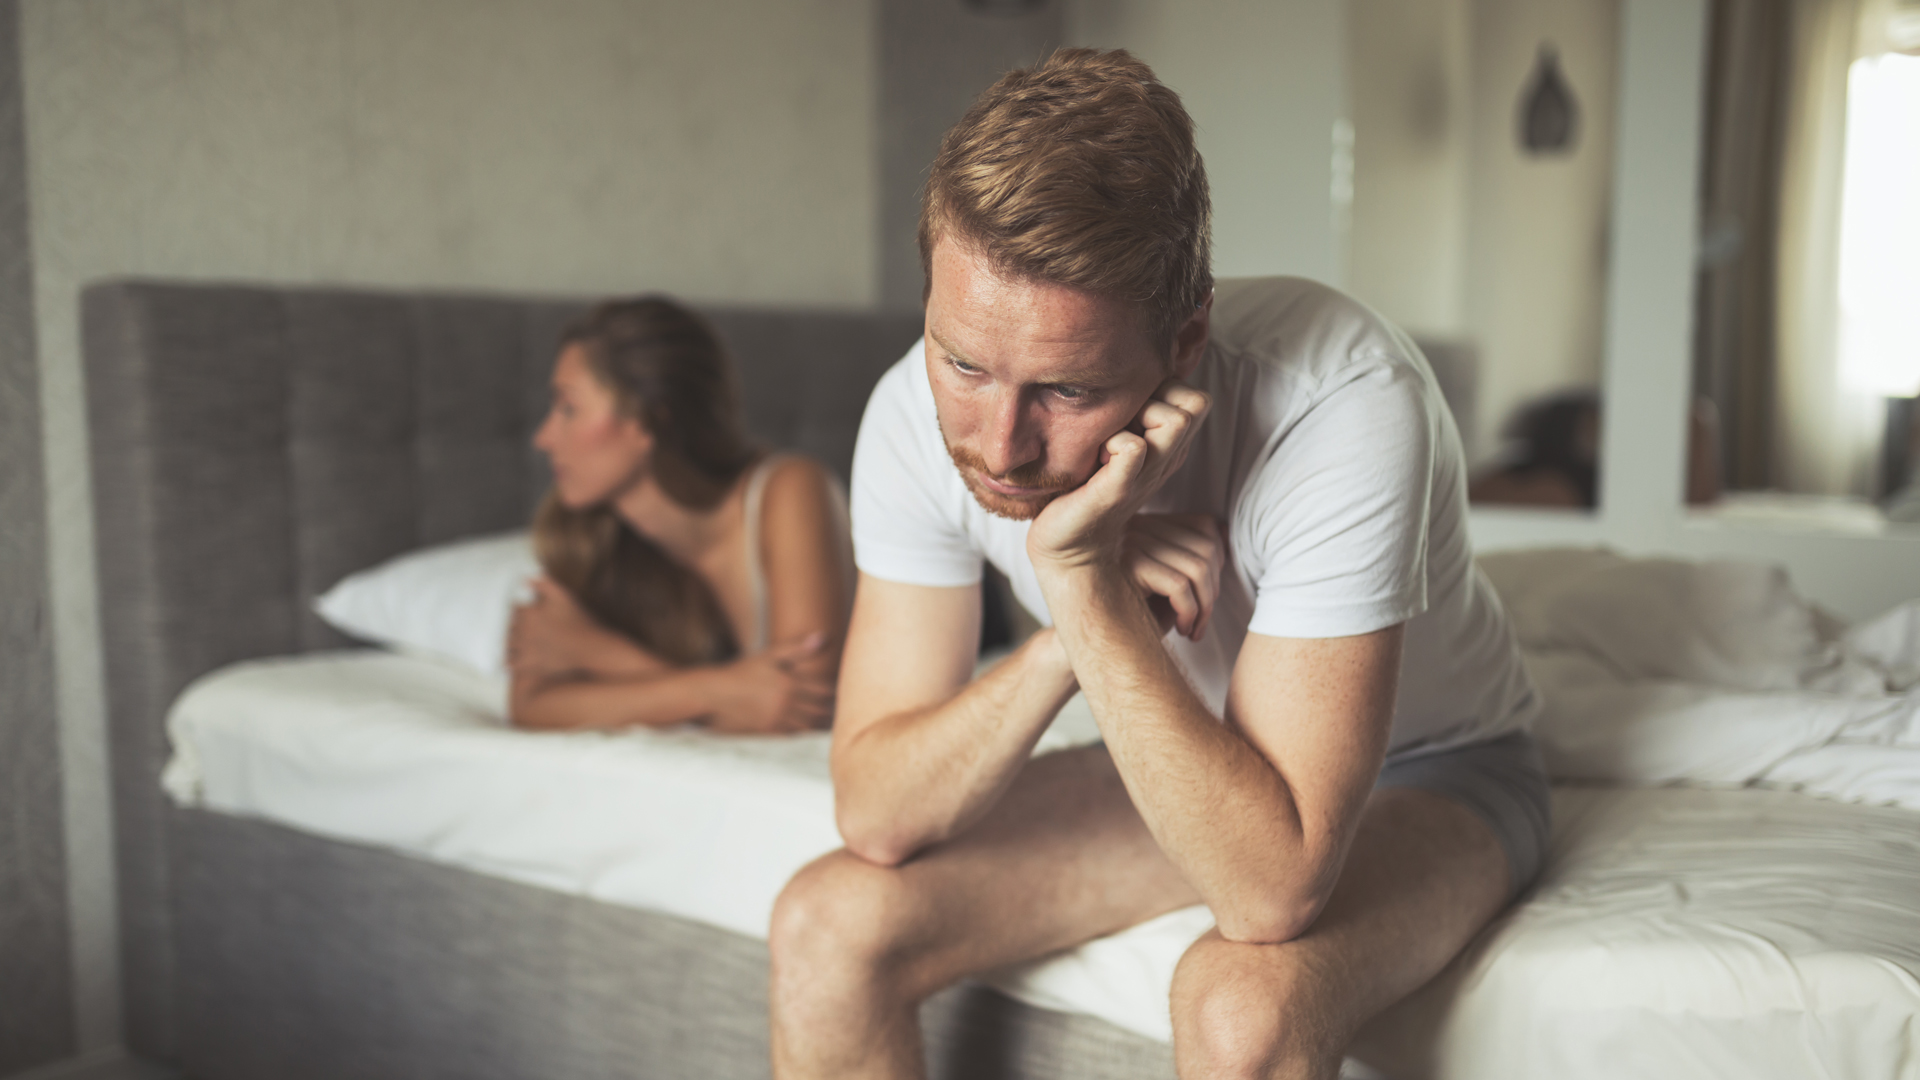 La falta de deseo sexual en los hombres puede relacionarse con un desequilibrio hormonal